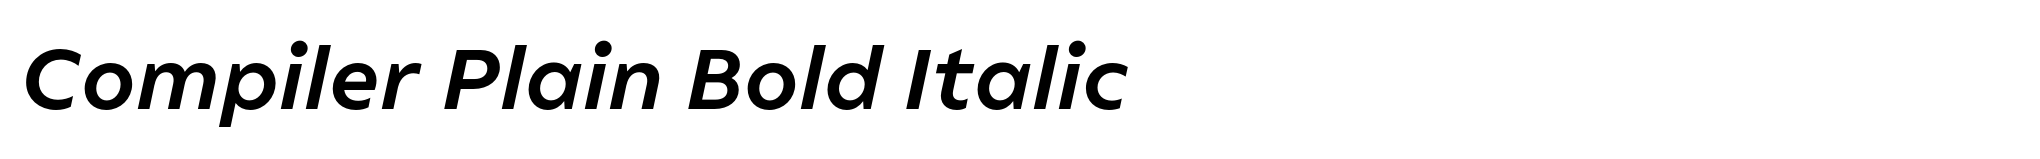 Compiler Plain Bold Italic image